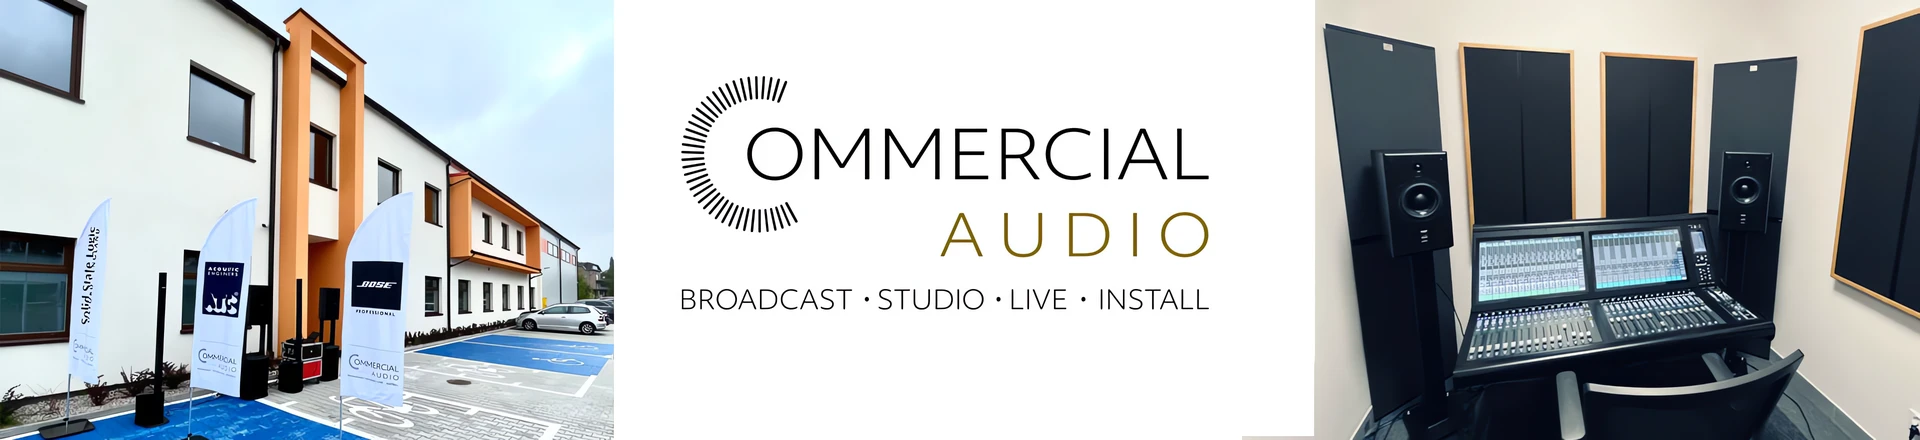 Commercial Audio: Nowa - nienowa firma na rynku instalacyjnym